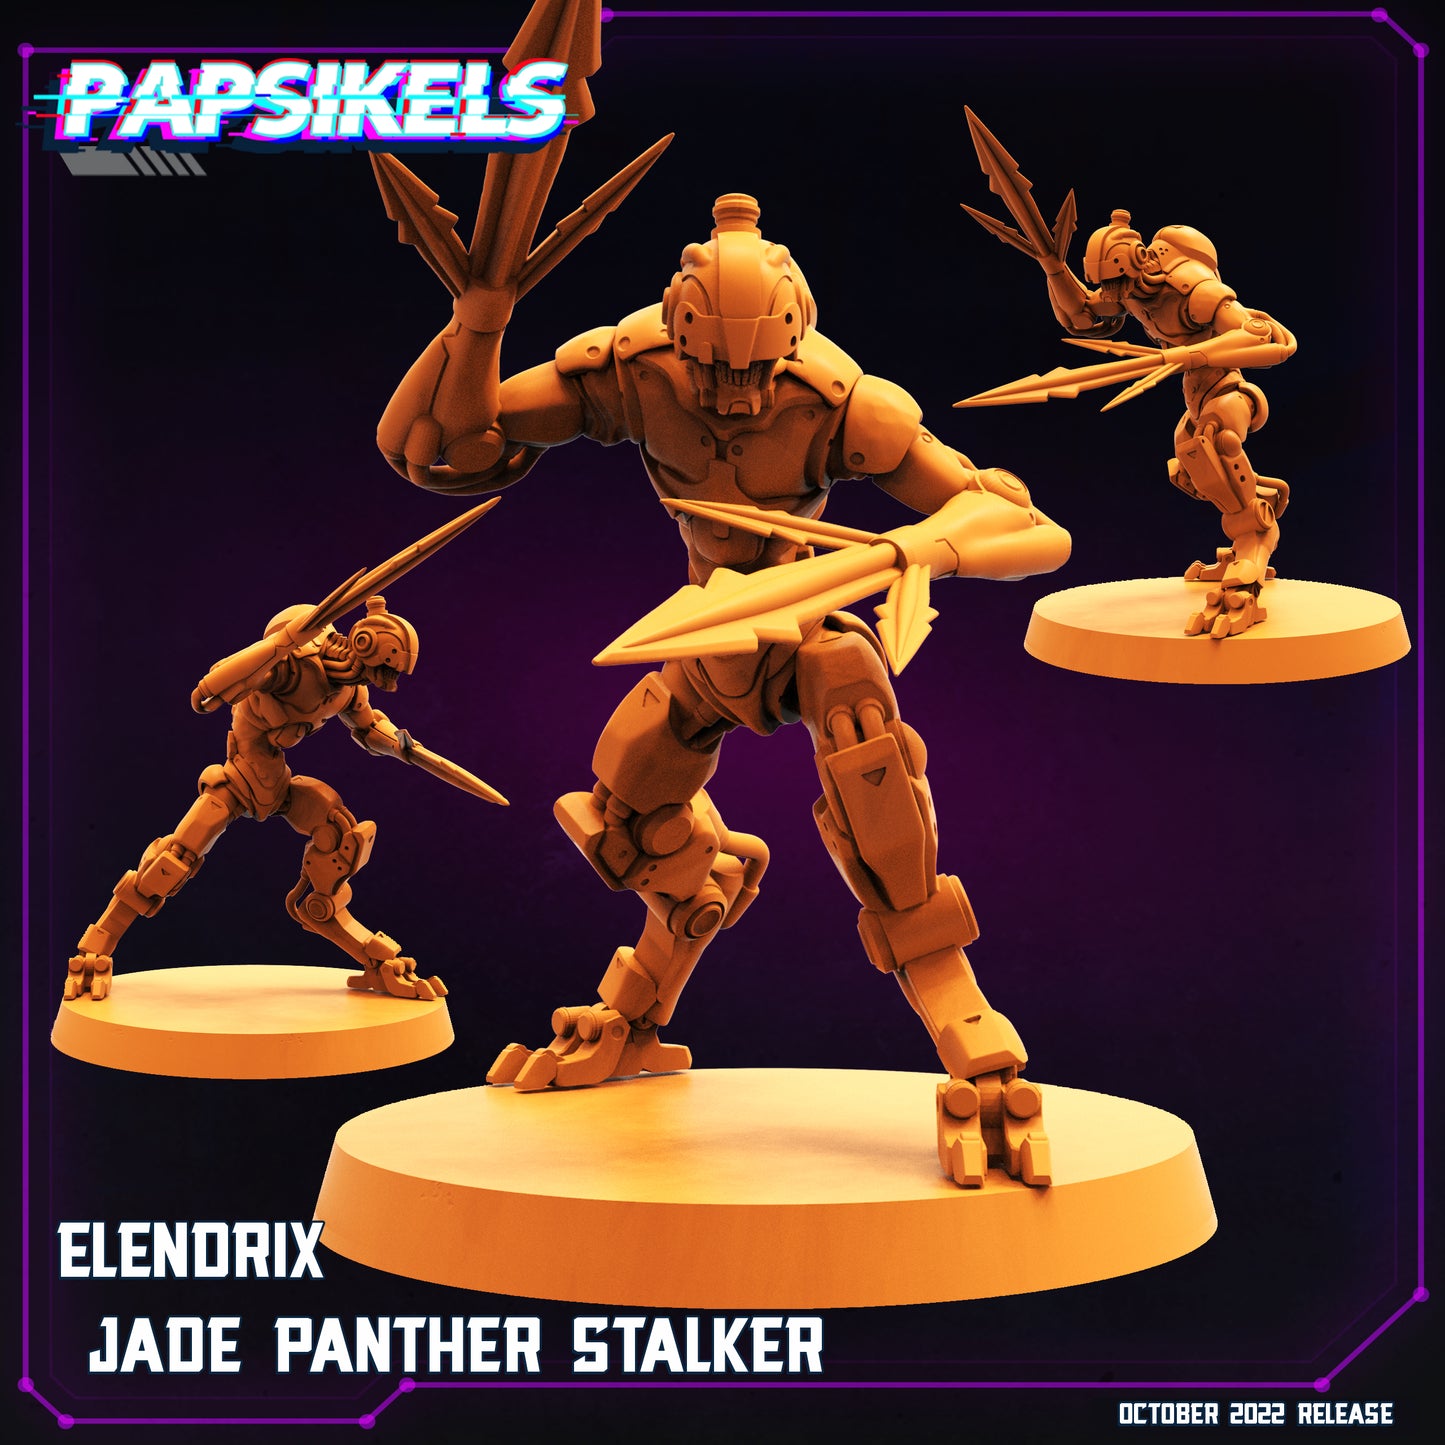 Jade Panther Stalker